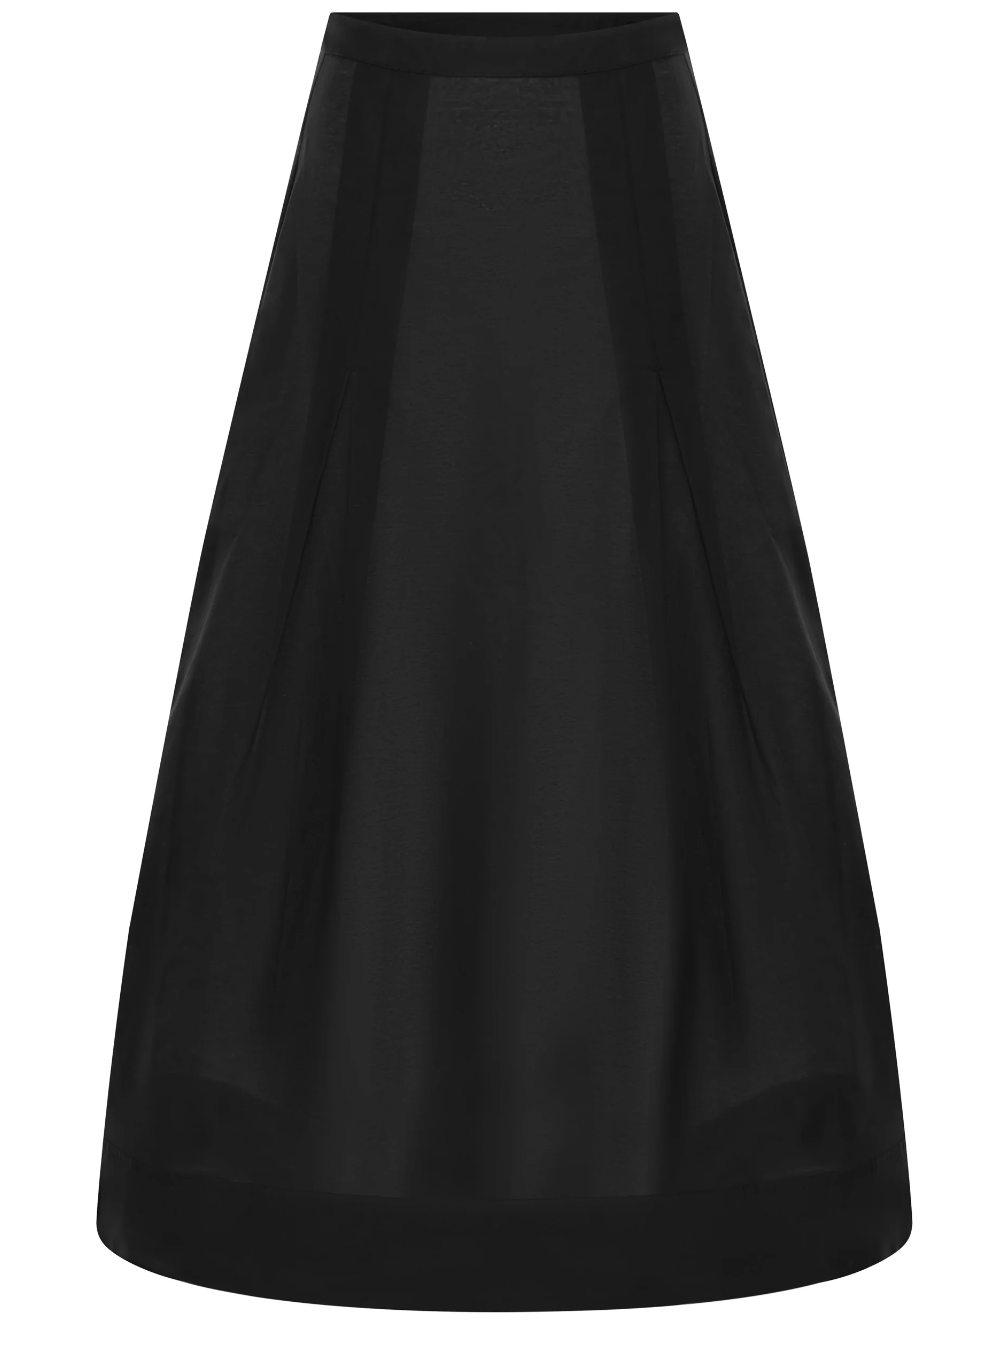 The Cyprus Skirt